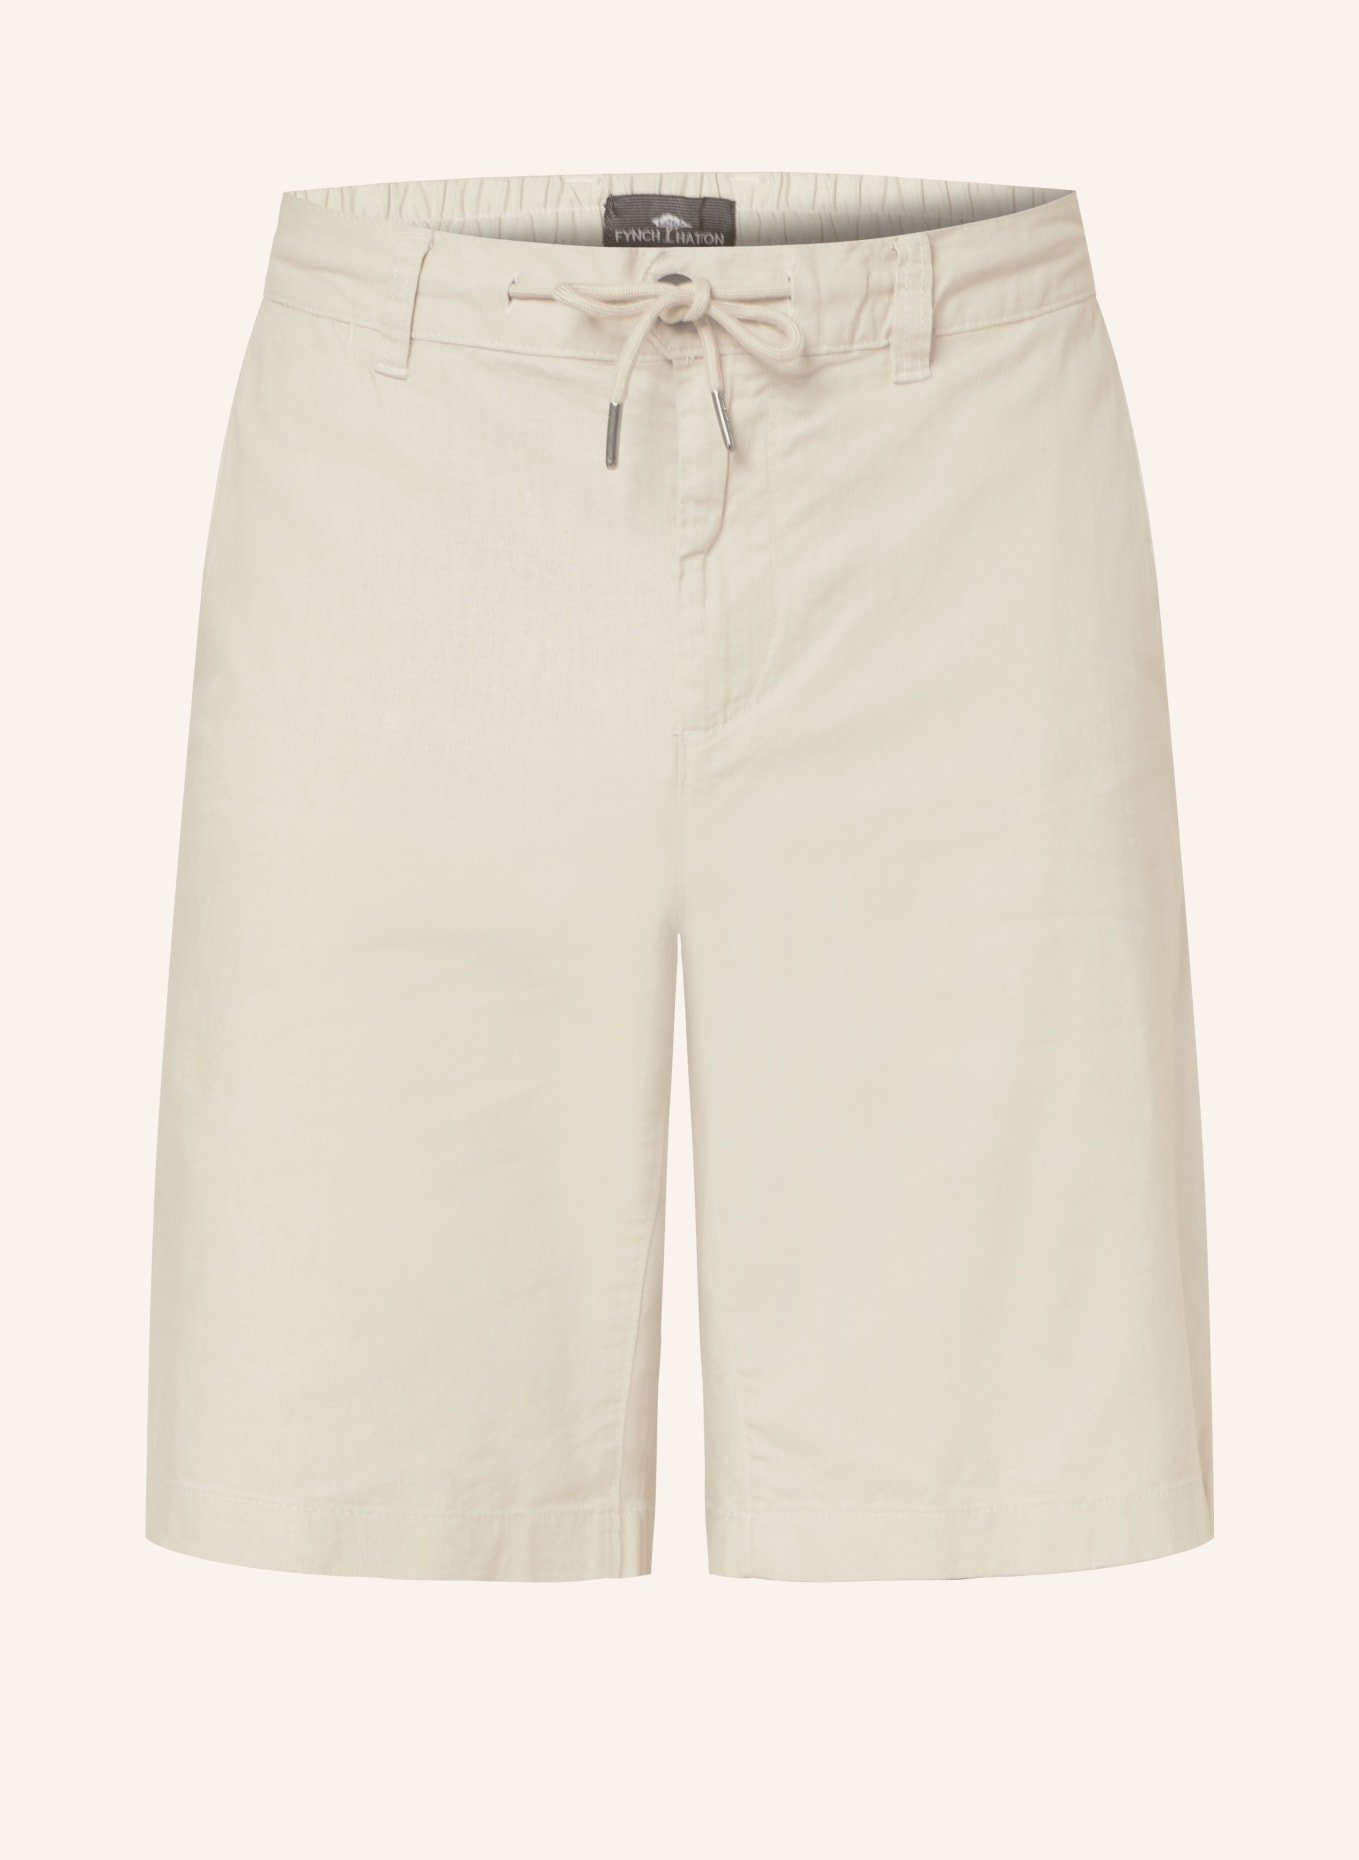 FYNCH-HATTON Shorts COLI mit Leinen, Farbe: BEIGE (Bild 1)